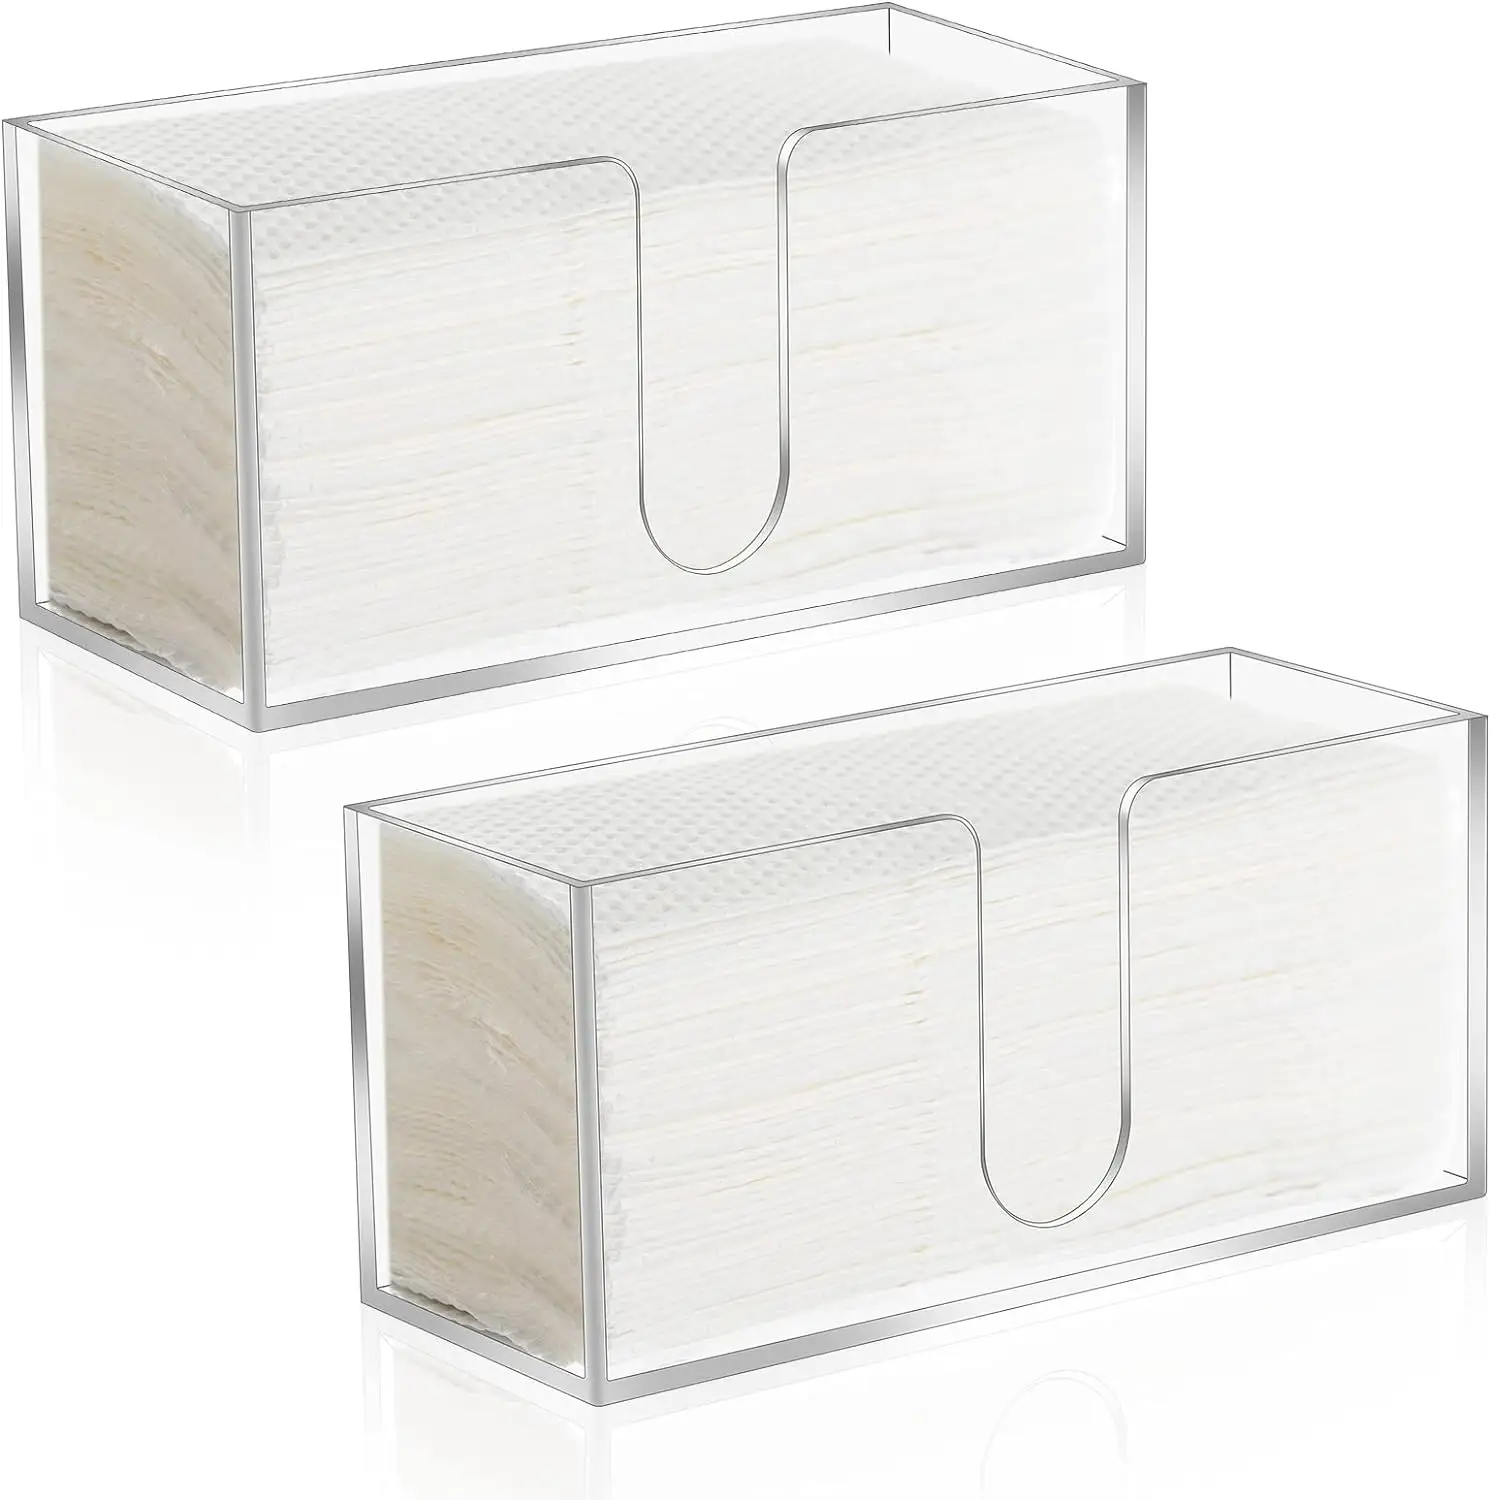 Dispensador de bancada em acrílico transparente com 2 unidades, porta-guardanapos com três dobras, dobrado em Z e C, para banheiro